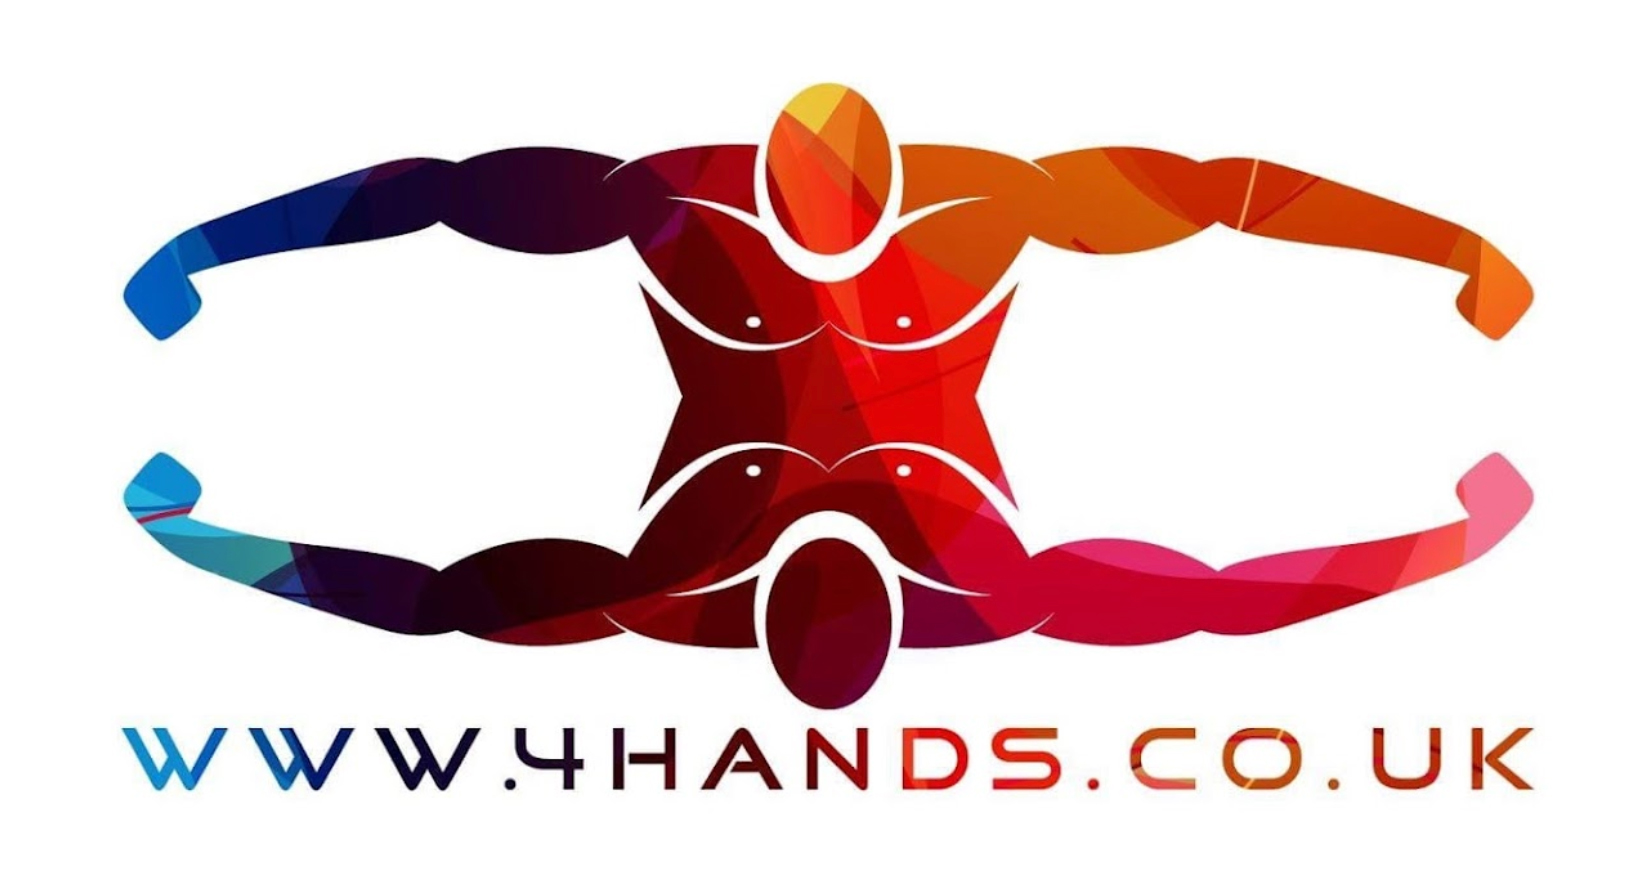 4 hands logo